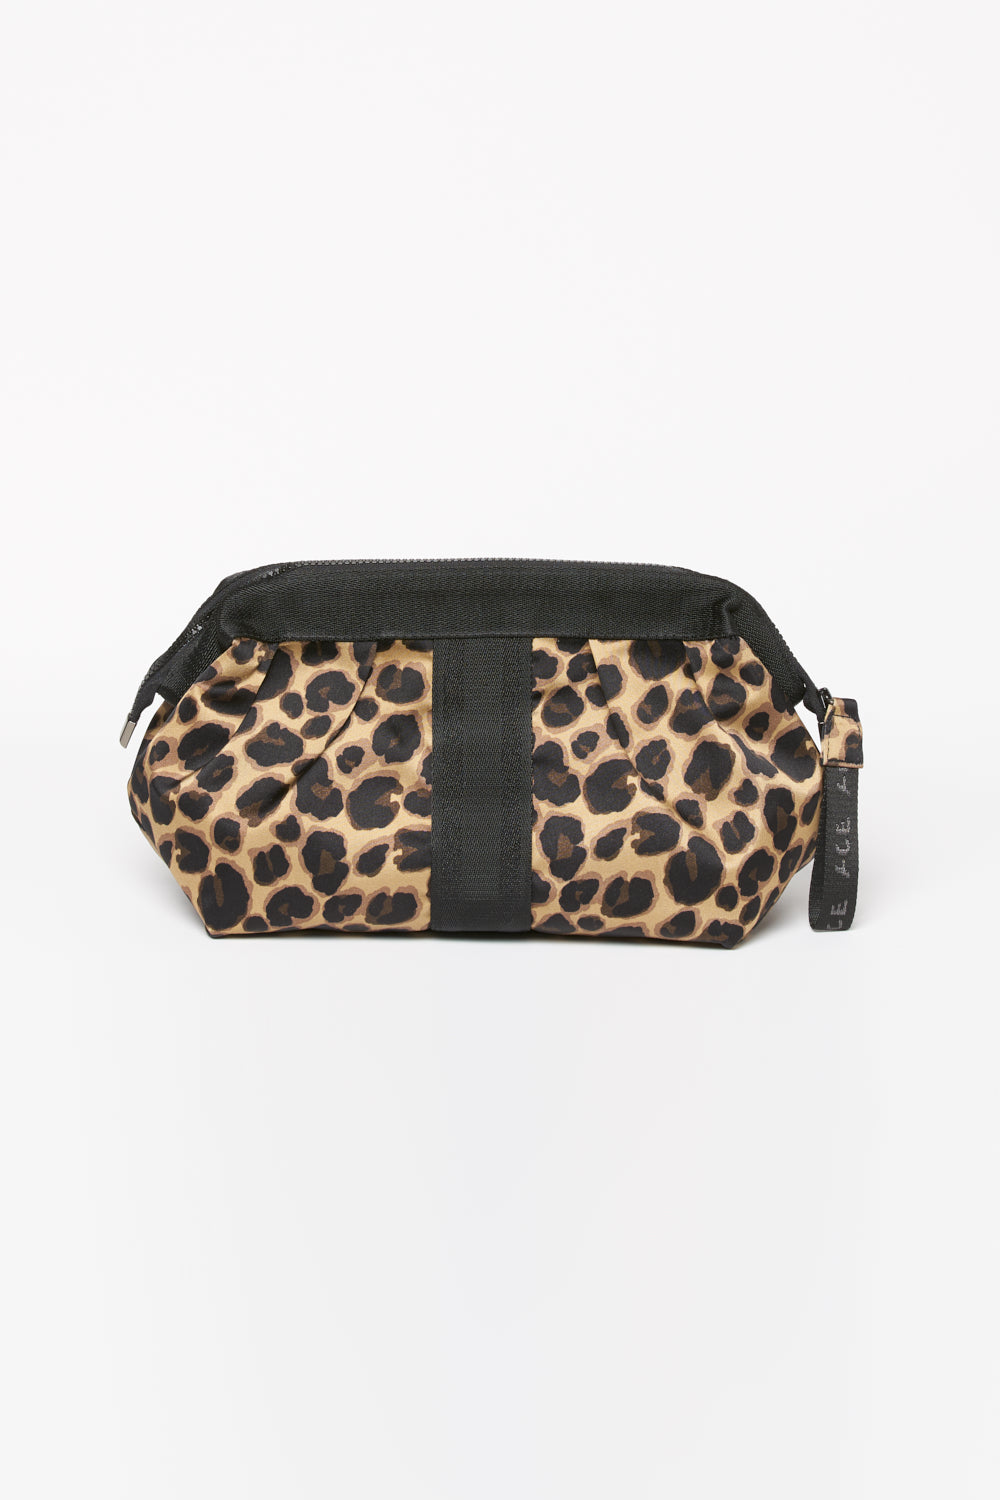 ACE best make up bag Leopard front